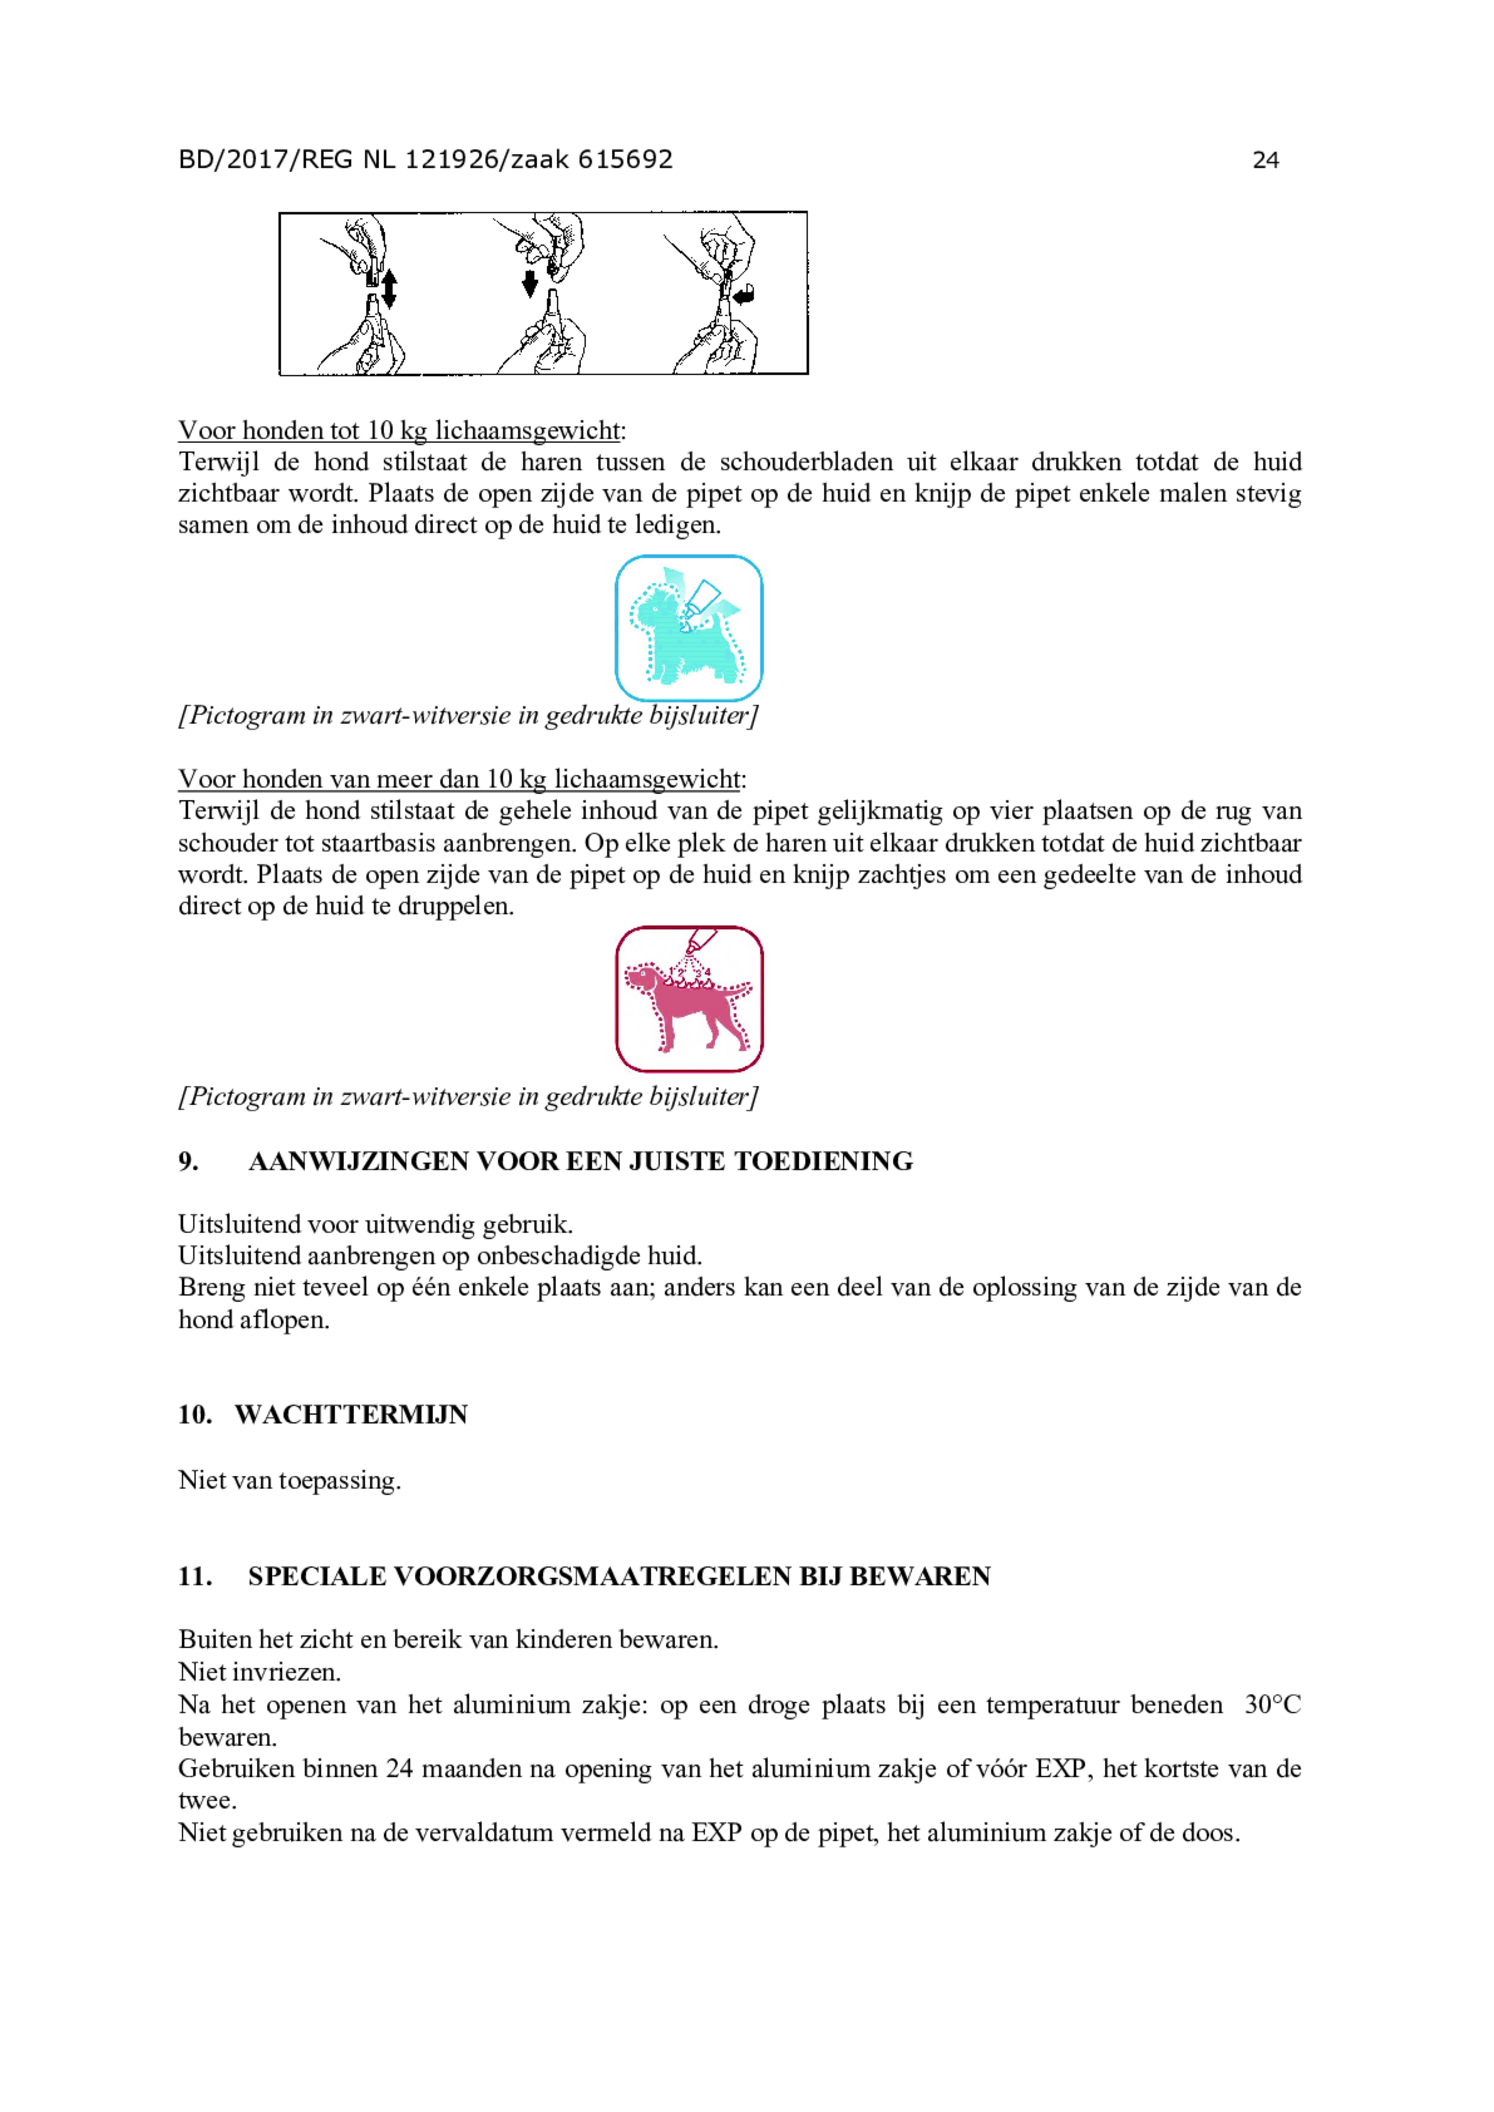 Hond Spot-on Solution 400/2000 afbeelding van document #24, gebruiksaanwijzing